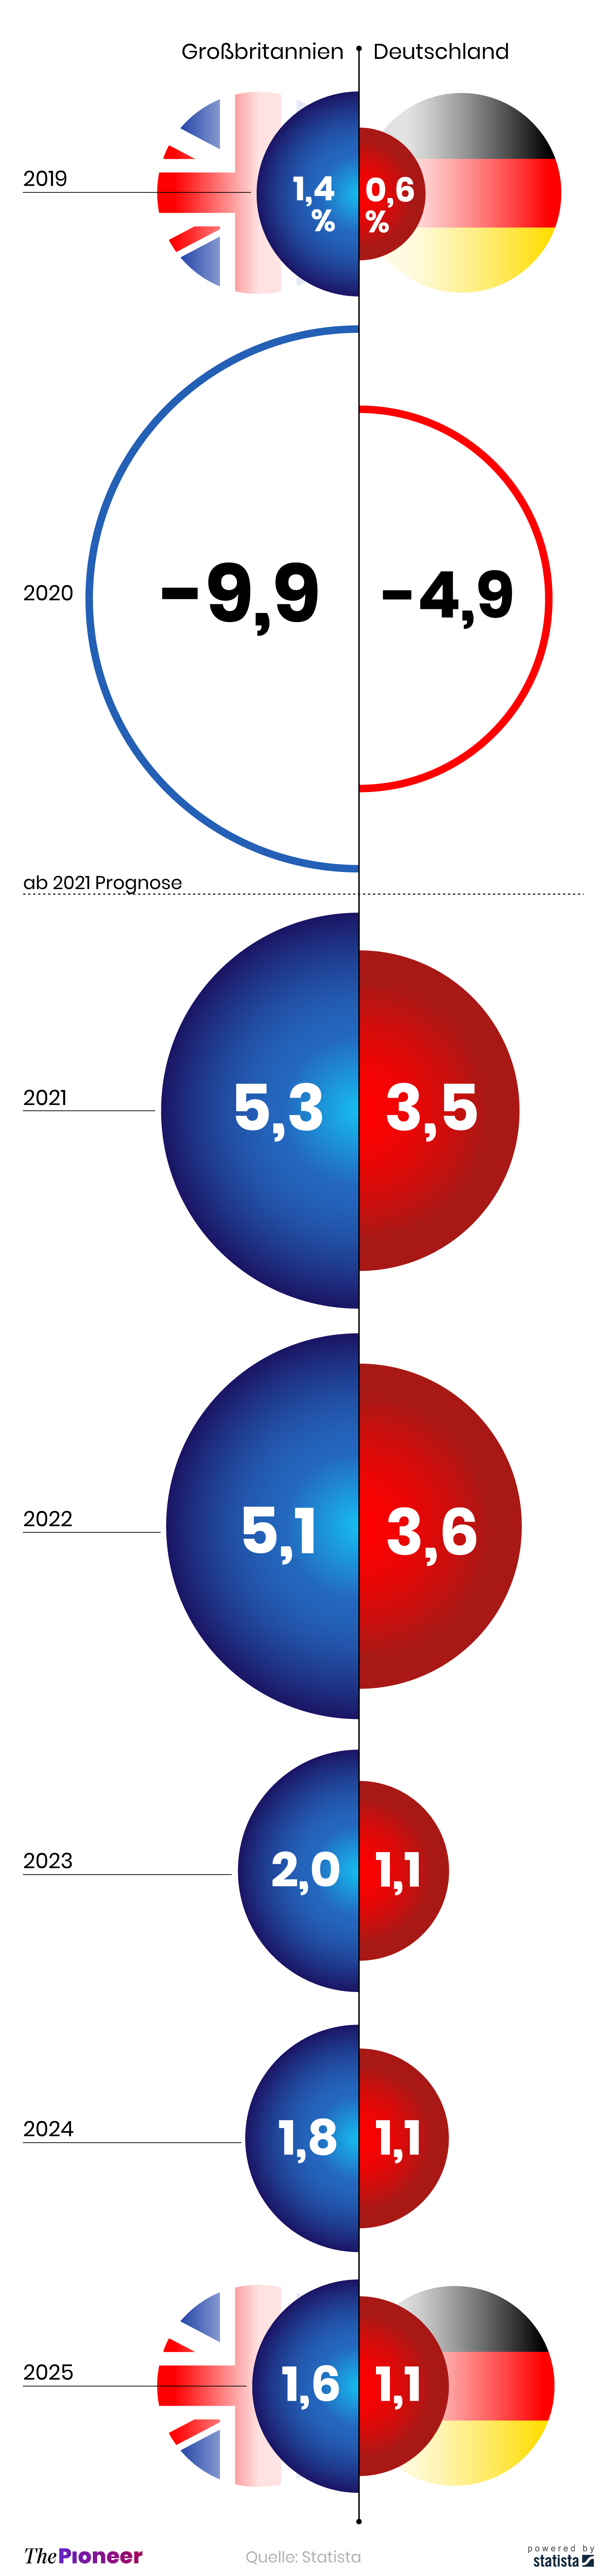 Vergleich des deutschen und britischen BIPs zwischen 2019 und 2025, Prognose ab 2021, in Prozent